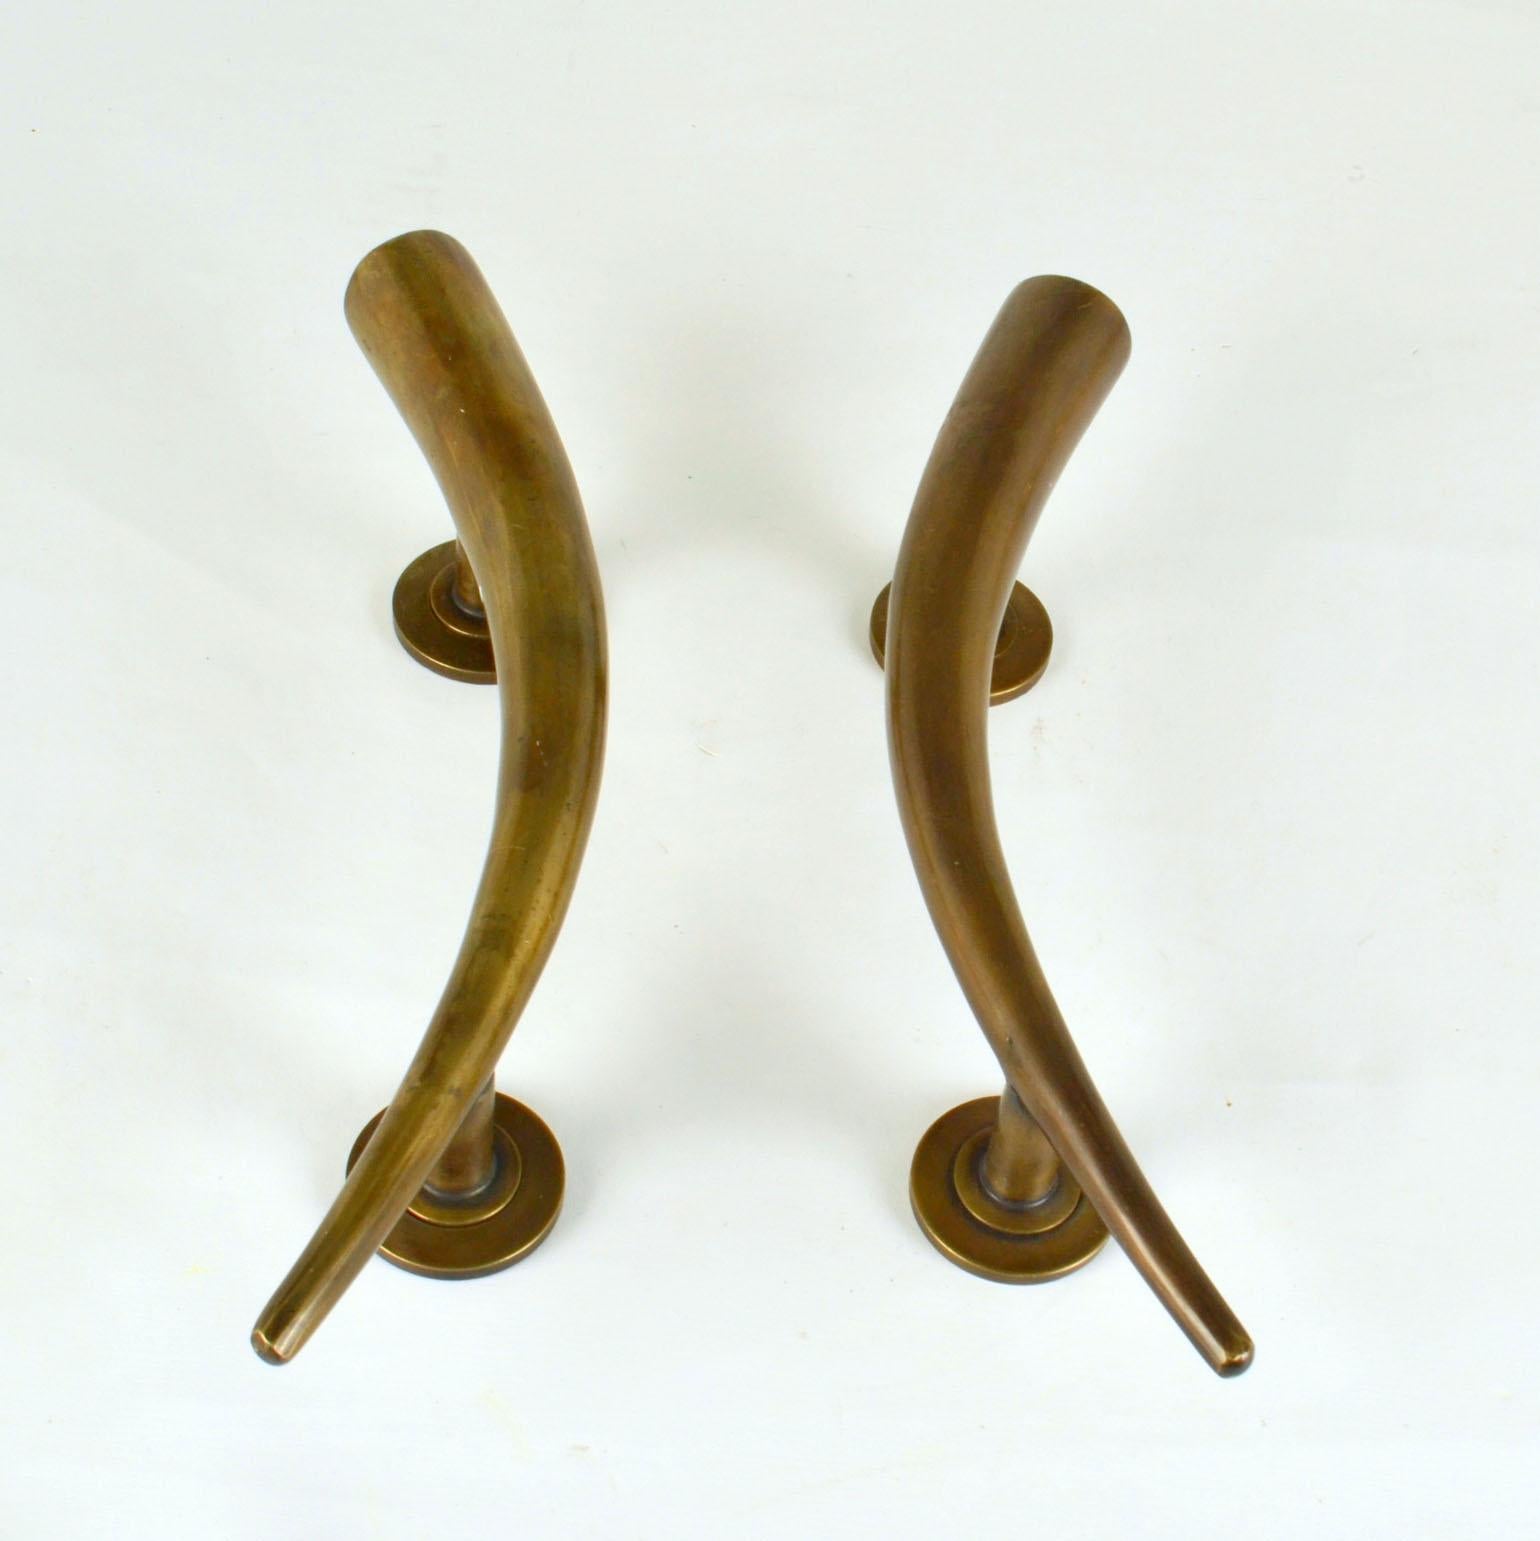 Ein Paar Art Deco Türgriffe aus Bronzeguss in Form eines Horns. Die originale Patina auf der glatten Oberfläche dieser skulpturalen Türgriffe unterstreicht ihr Alter.
Sie können innerhalb oder außerhalb jedes modernen Gebäudes eingesetzt werden. Sie